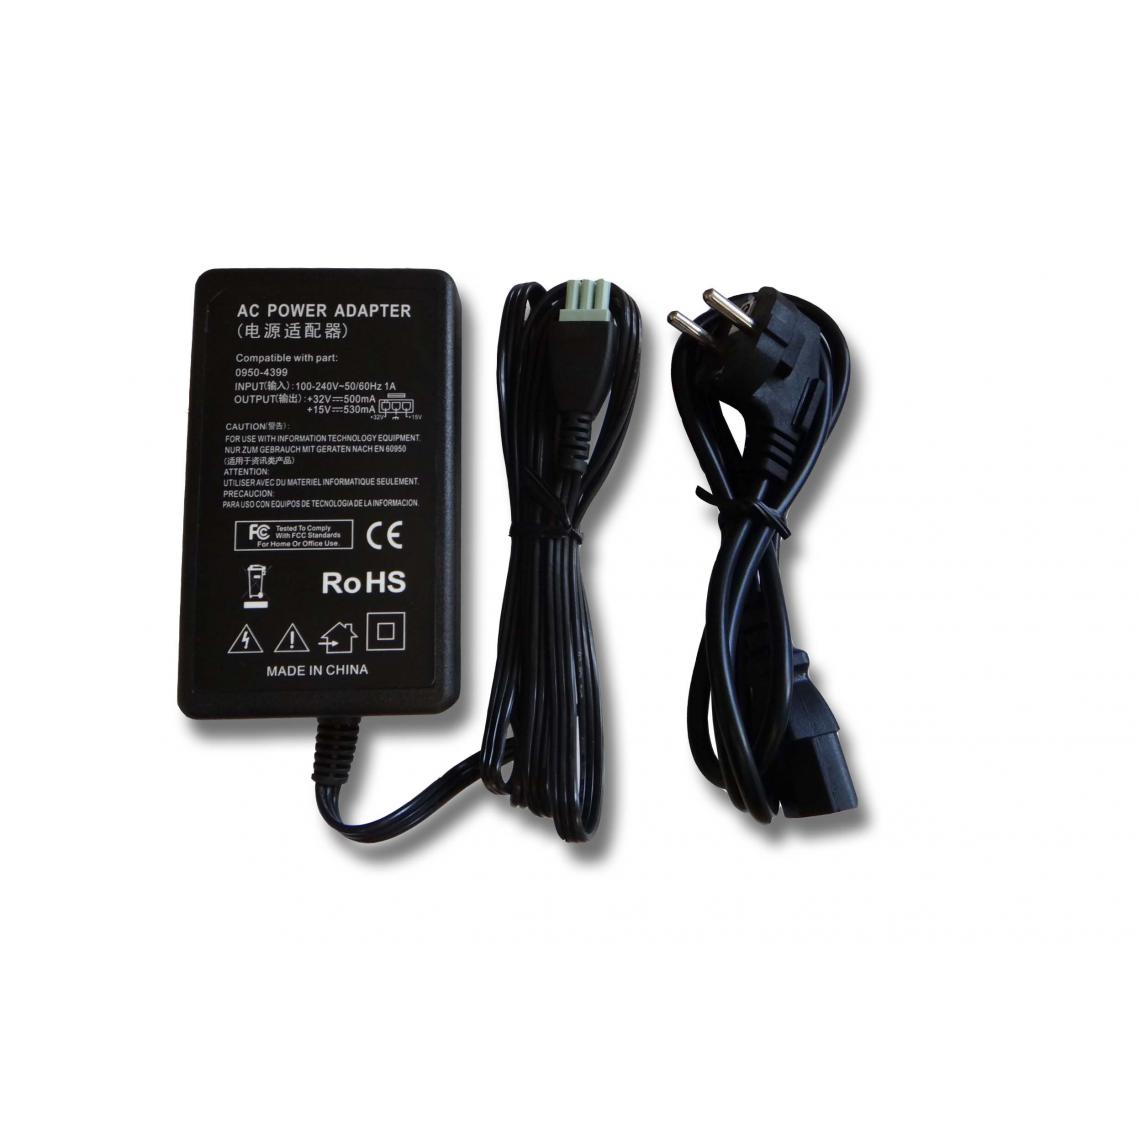 Vhbw - vhbw Imprimante Adaptateur bloc d'alimentation Câble d'alimentation Chargeur compatible avec HP Deskjet 3745, 3840, 3845 imprimante - 0.53 / 0.5A - Accessoires alimentation